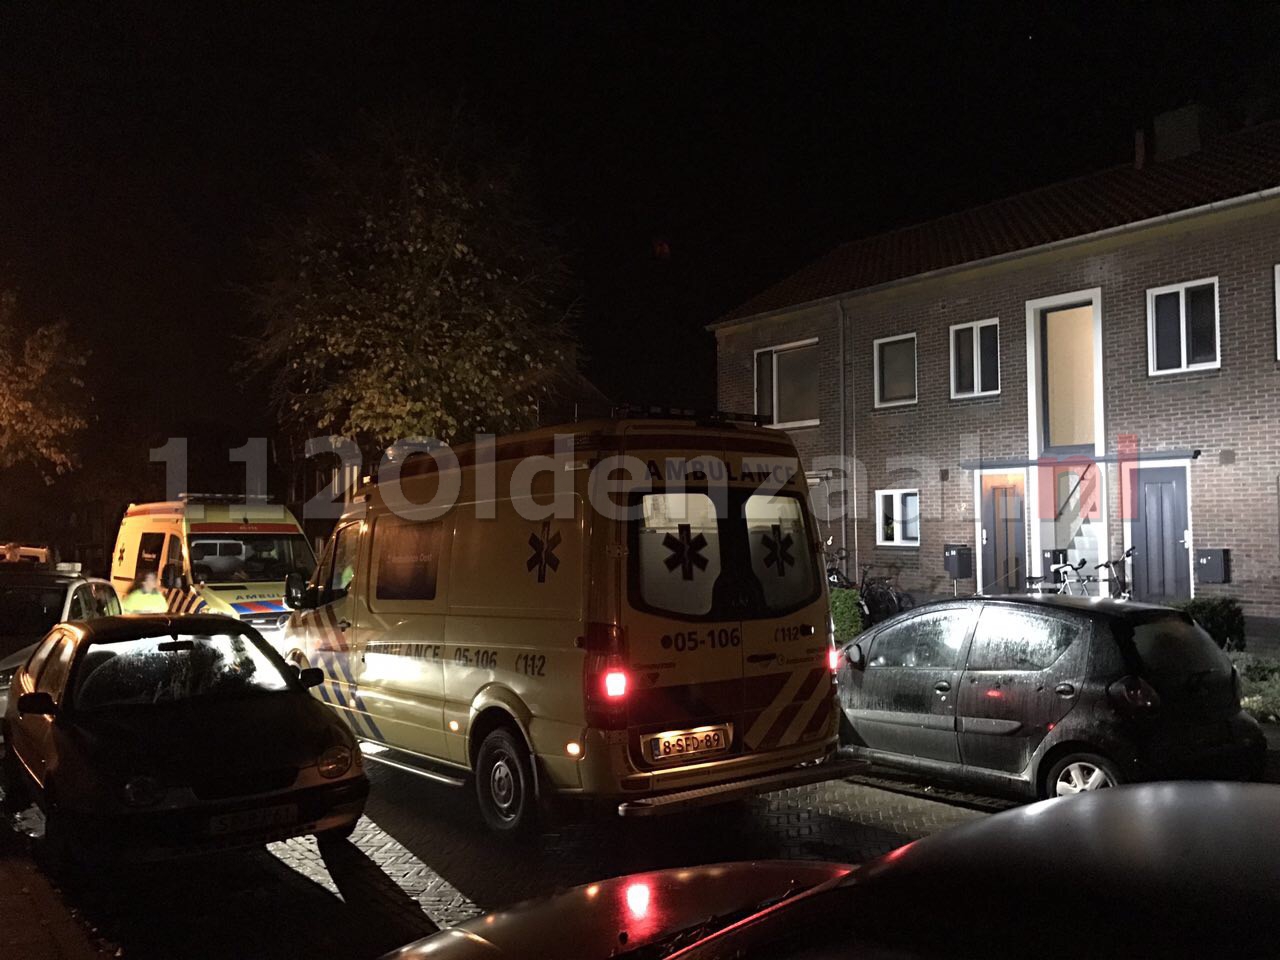 Foto: Twee personen met spoed naar ziekenhuis na incident in woning Oldenzaal